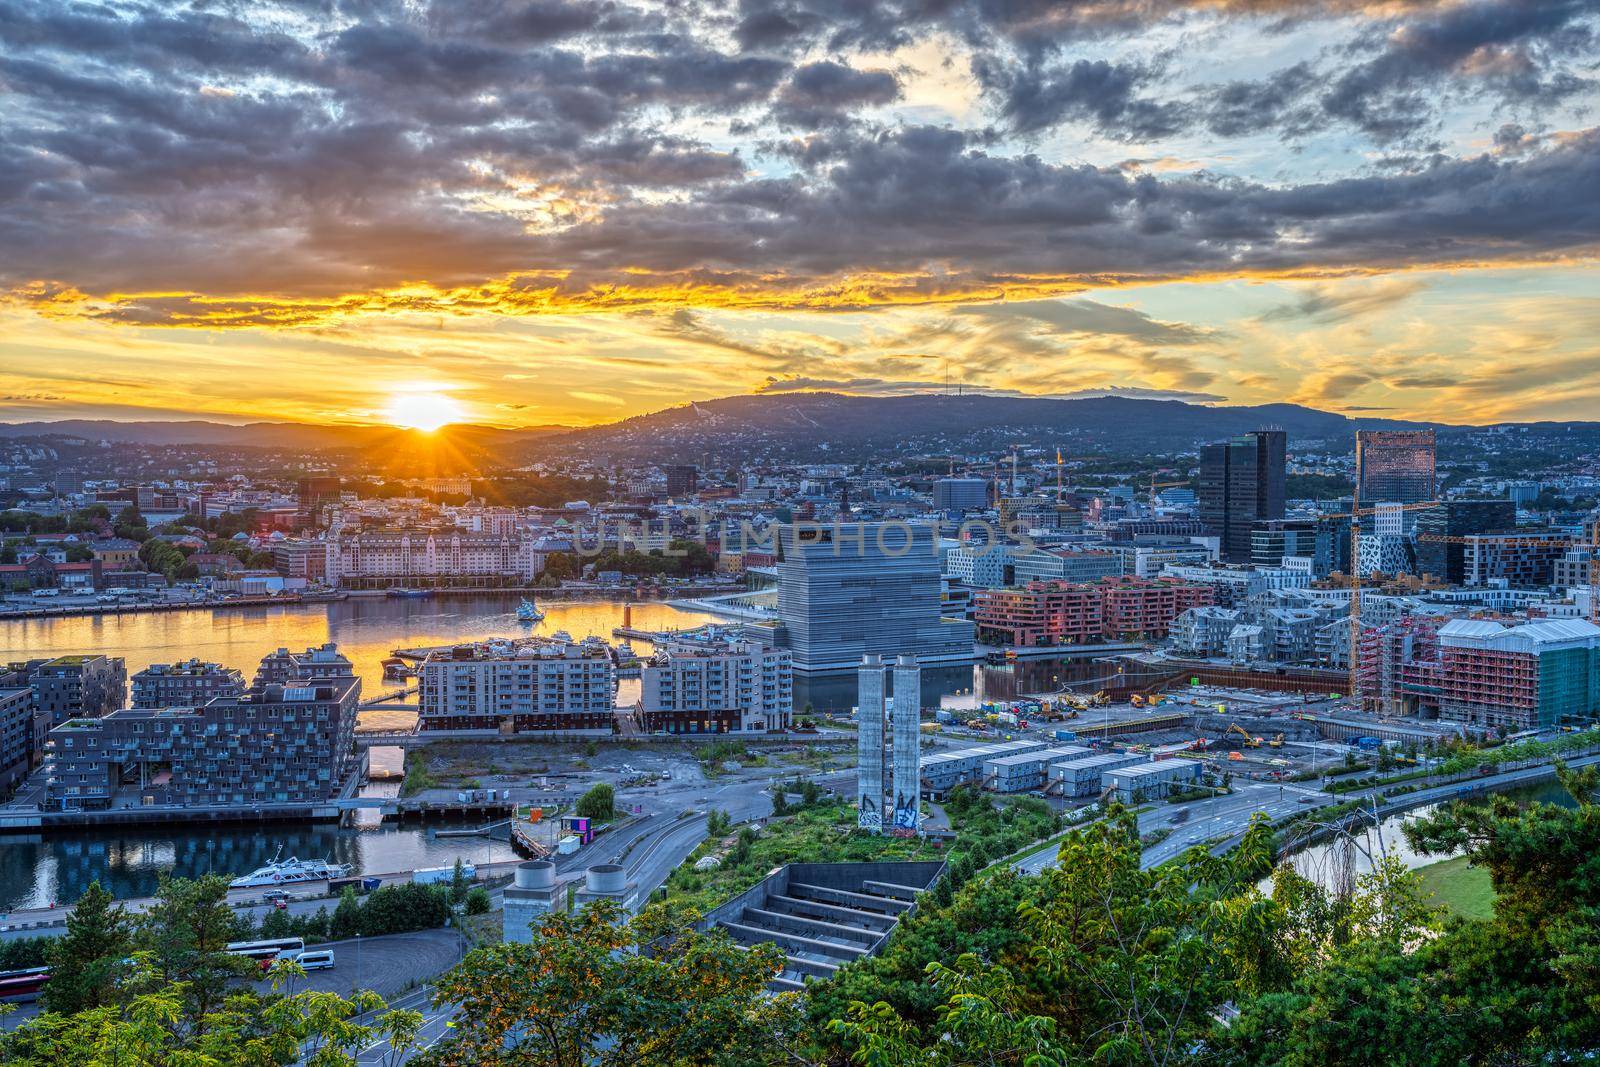 Beautiful sunset seen in Oslo by elxeneize